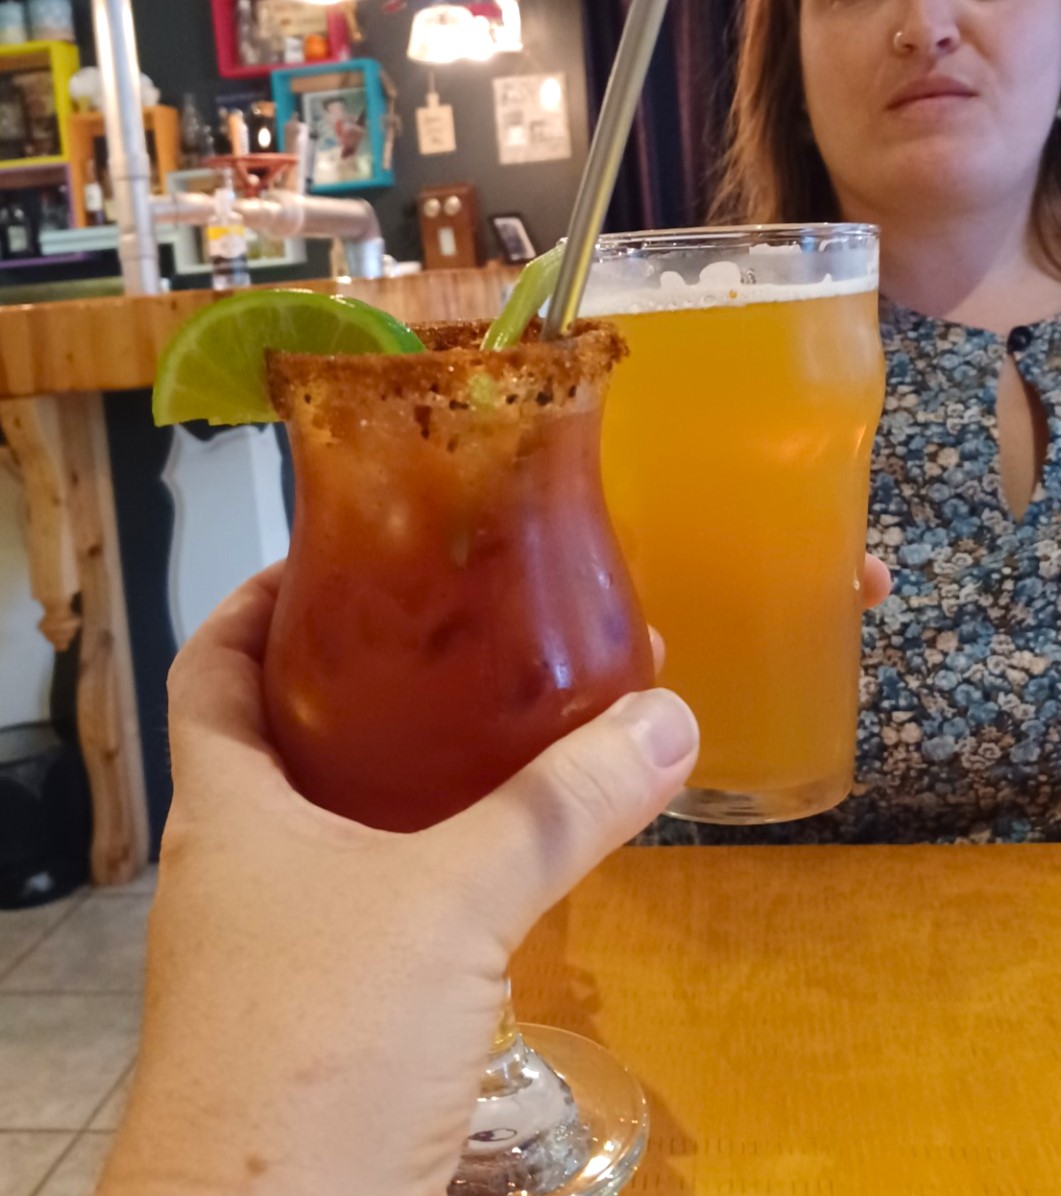 Une main tien un cocktail rouge et une autre personne tient un verre de bière. Les deux breuvages se rencontrer, comme pour faire un "santé". L'image a été prise au Ste-Anne, un restaurant de Ville-Marie, au Témiscamingue.